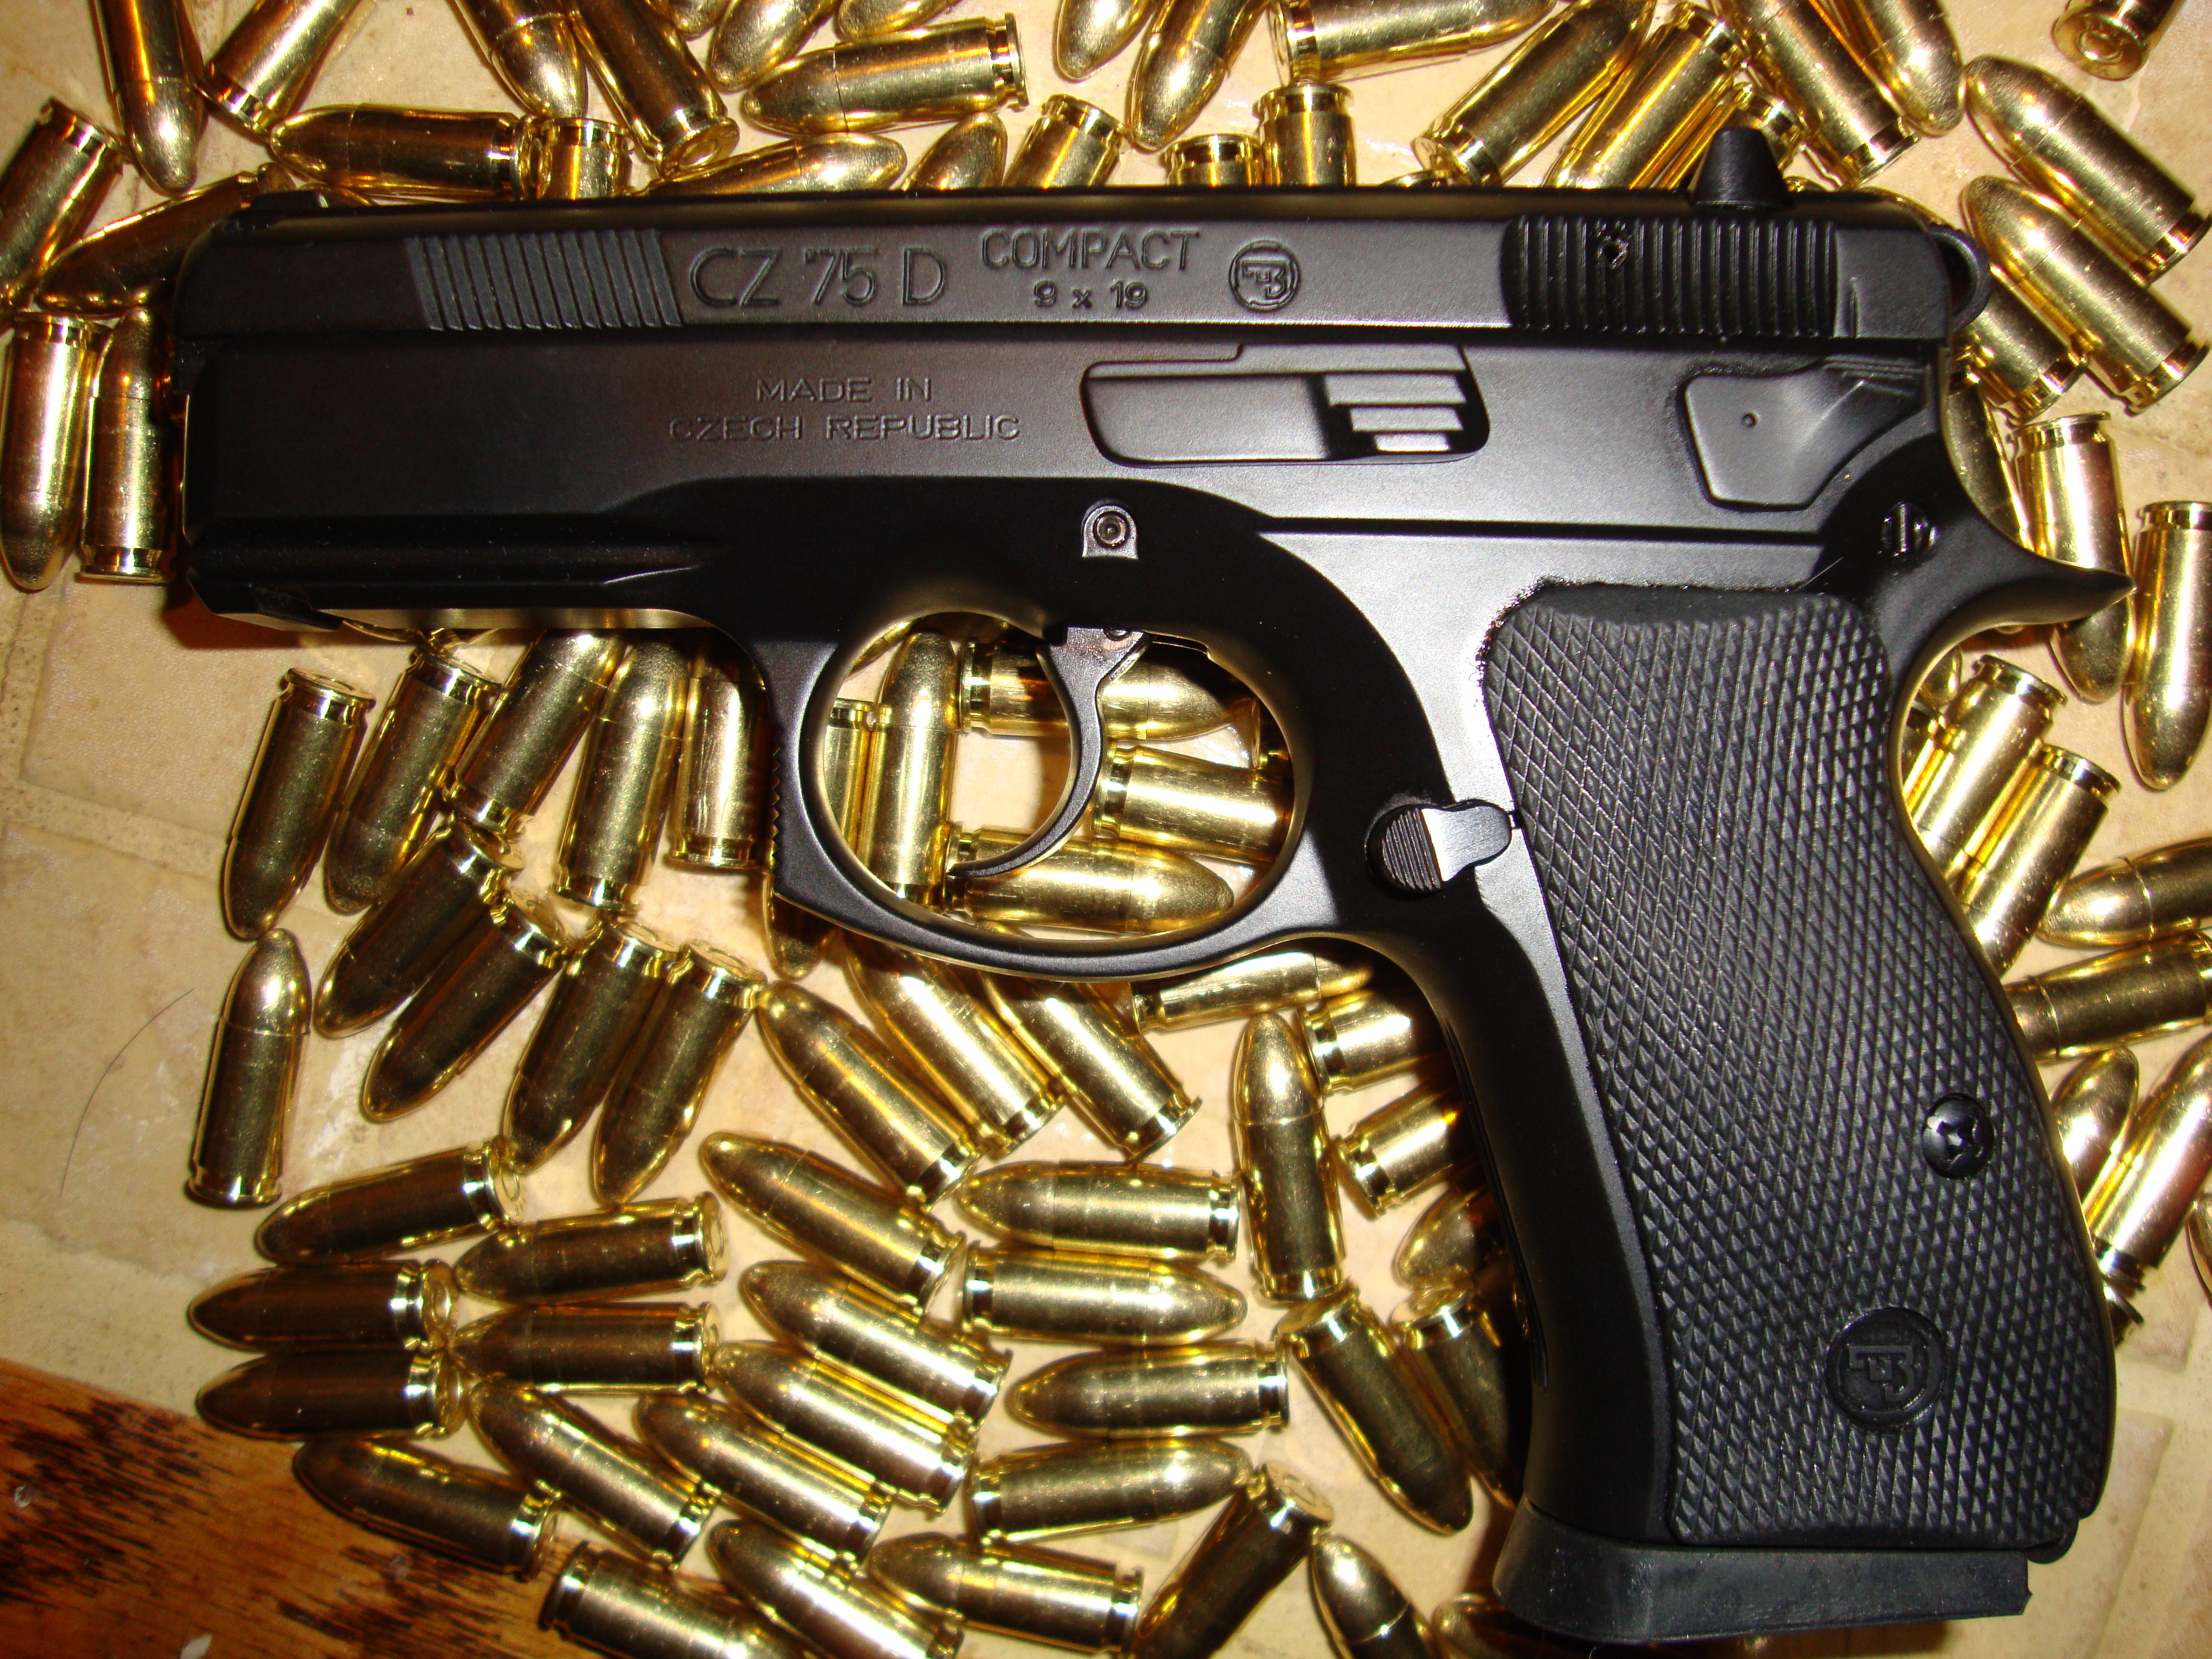 пистолеты, пистолеты, руки, оружие, боеприпасы, пистолеты, CZ - 75 - обои на рабочий стол